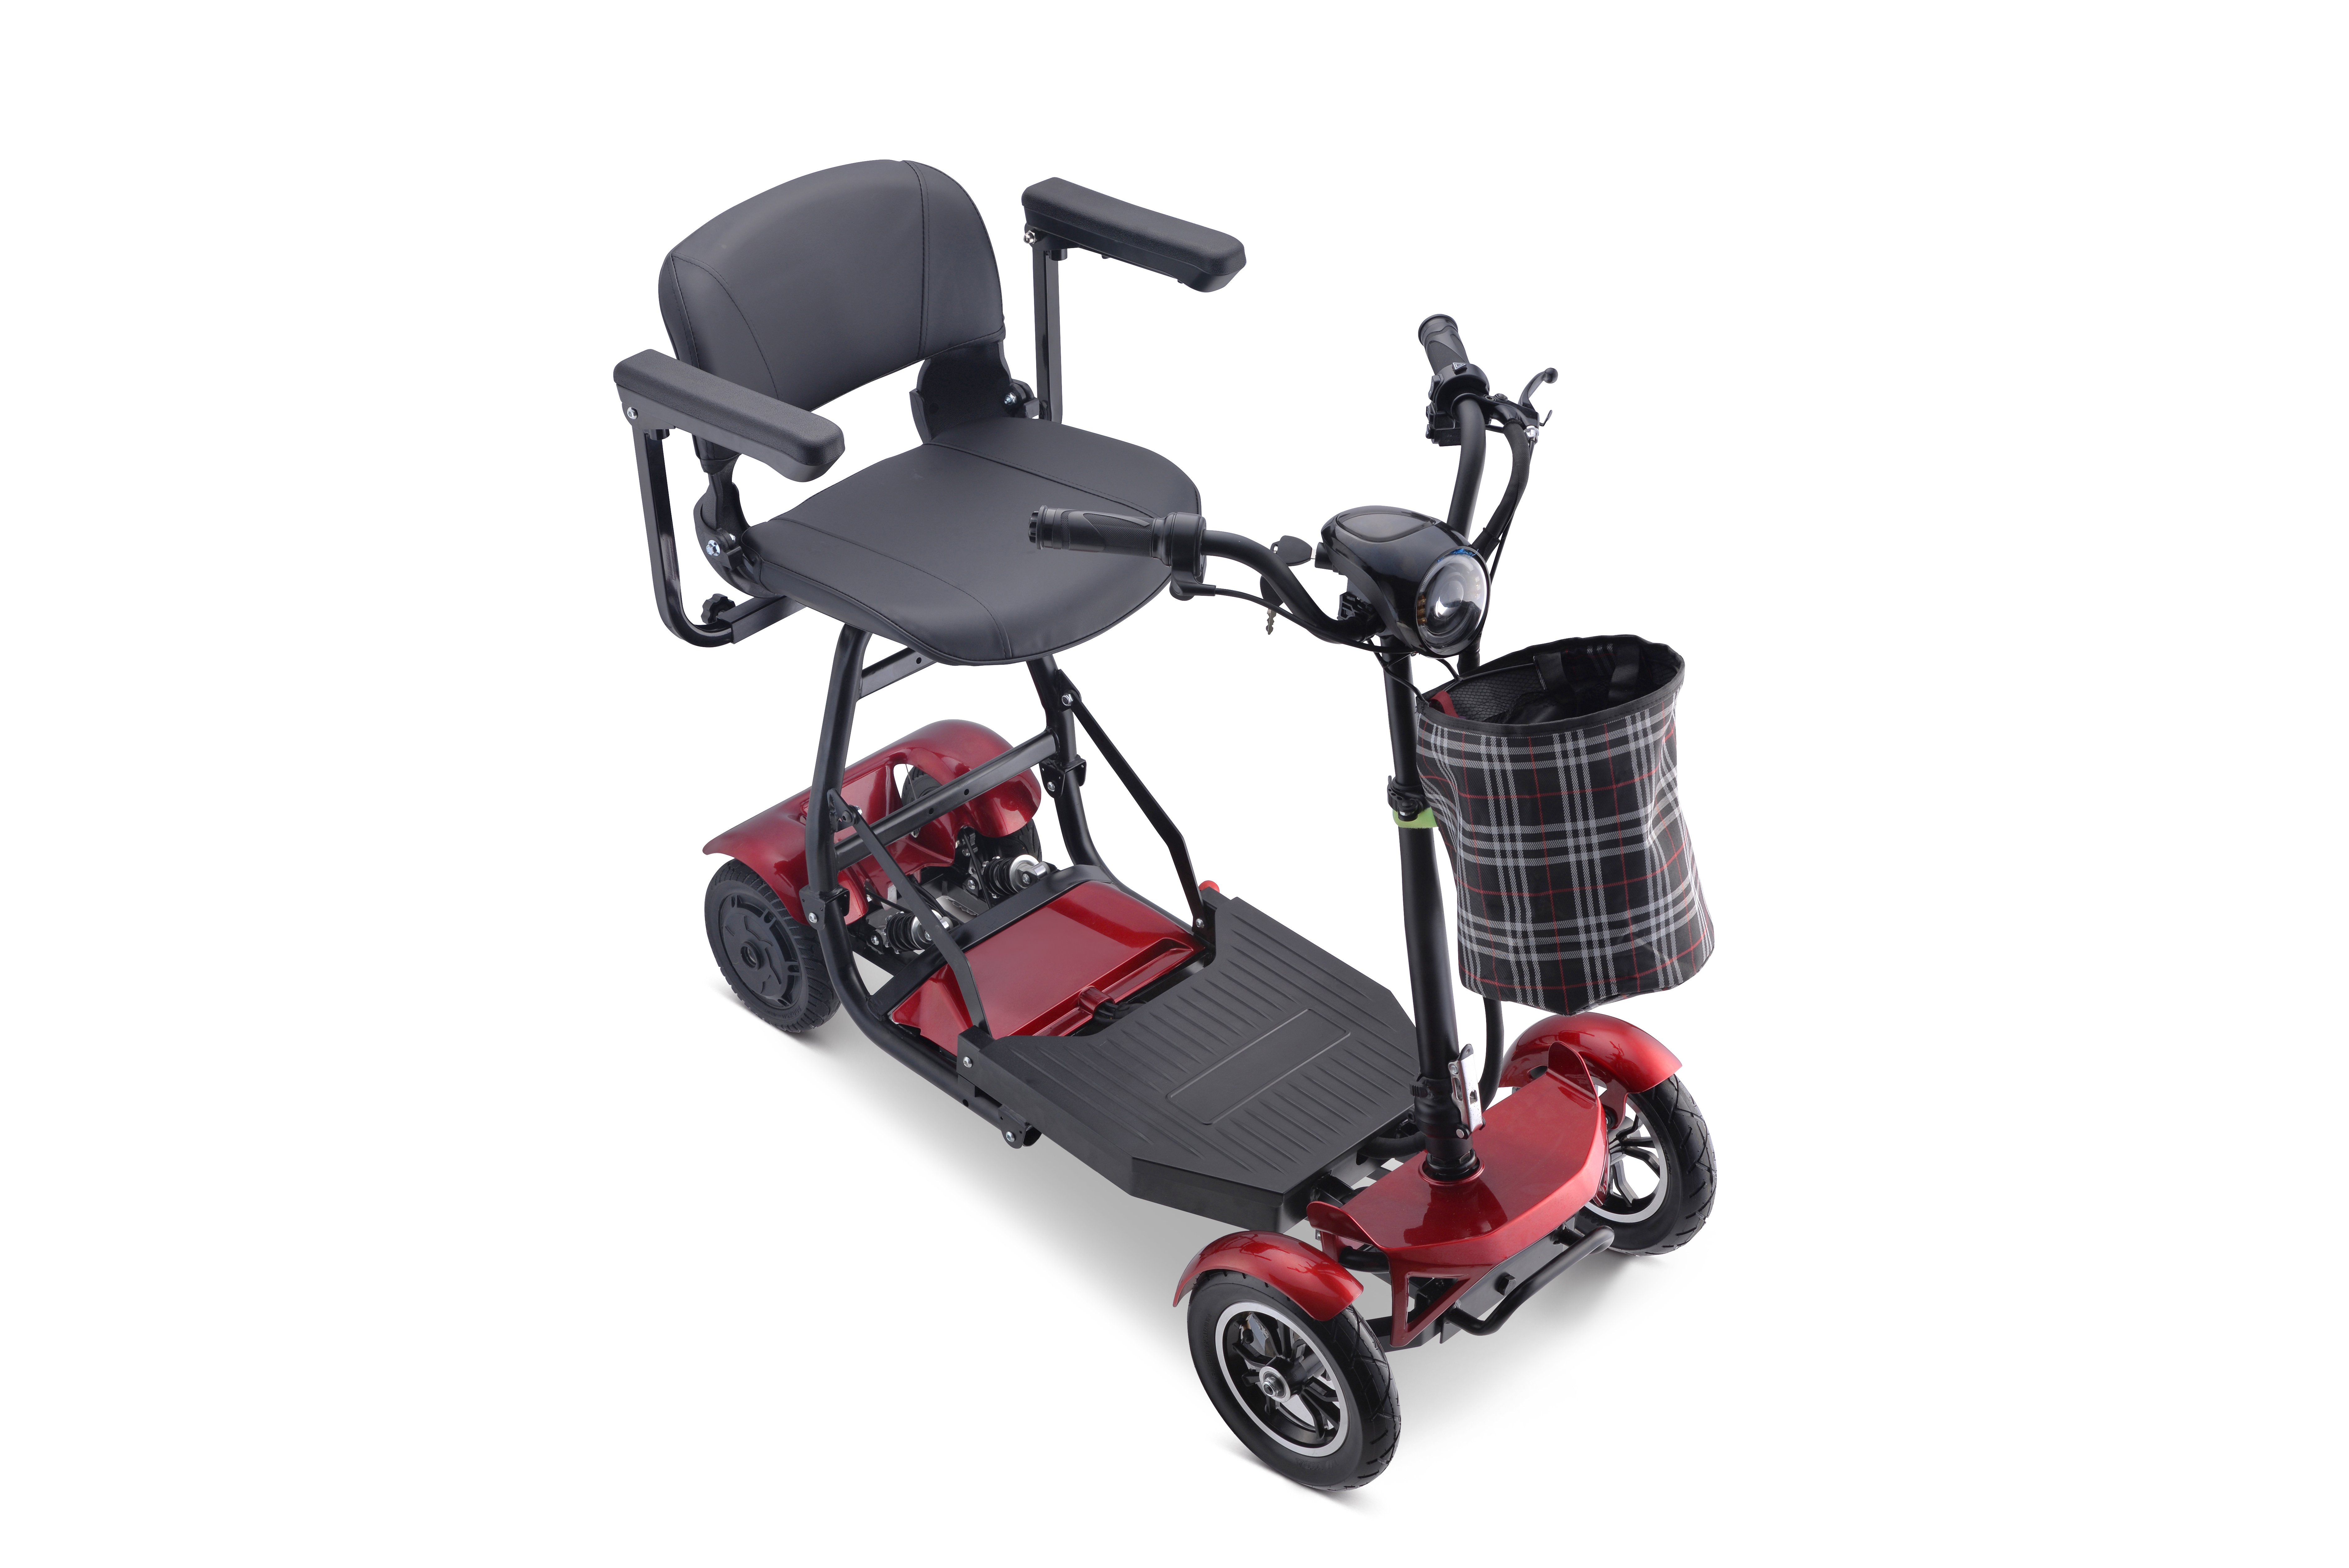 Électrique avec siège bébé Véhicule Cargo Longue portée Passenge Etricycle Auto Richshaw Scooter de mobilité Image descriptive